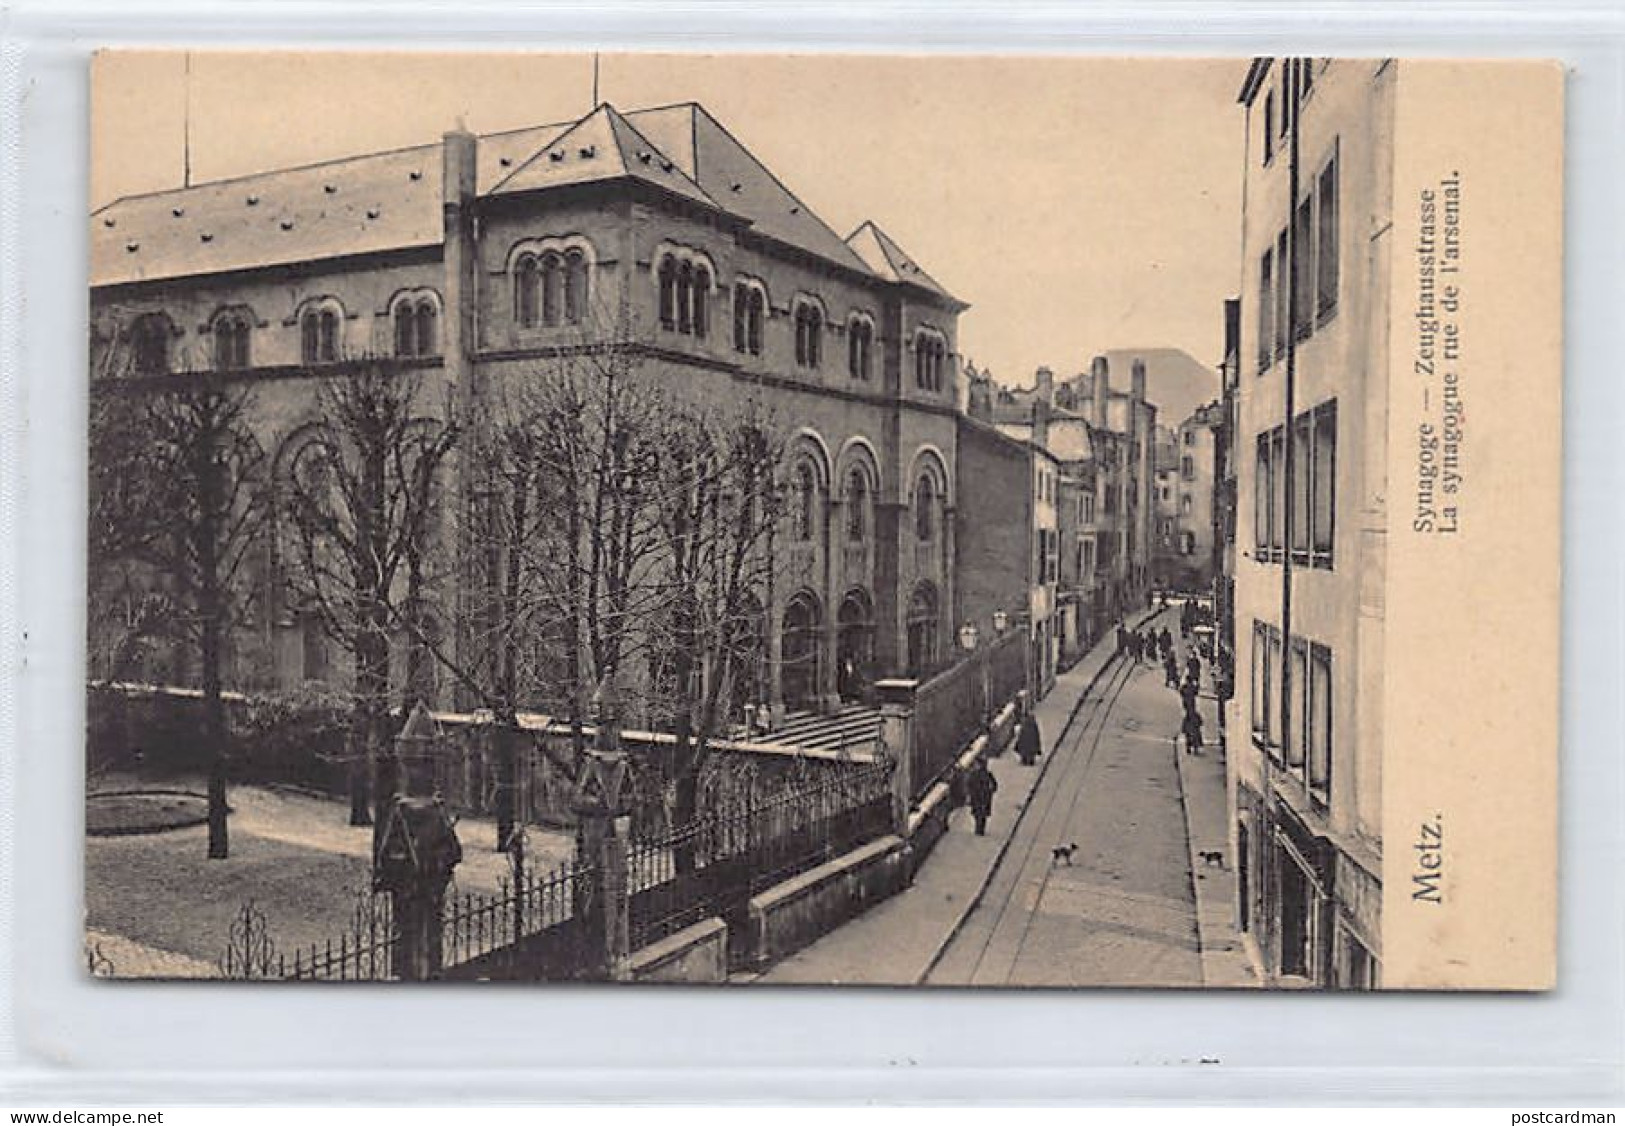 JUDAICA - France - METZ - La Synagogue, Rue De L'Arsenal - Ed. Nels Série 104 N. 275 - Judaika